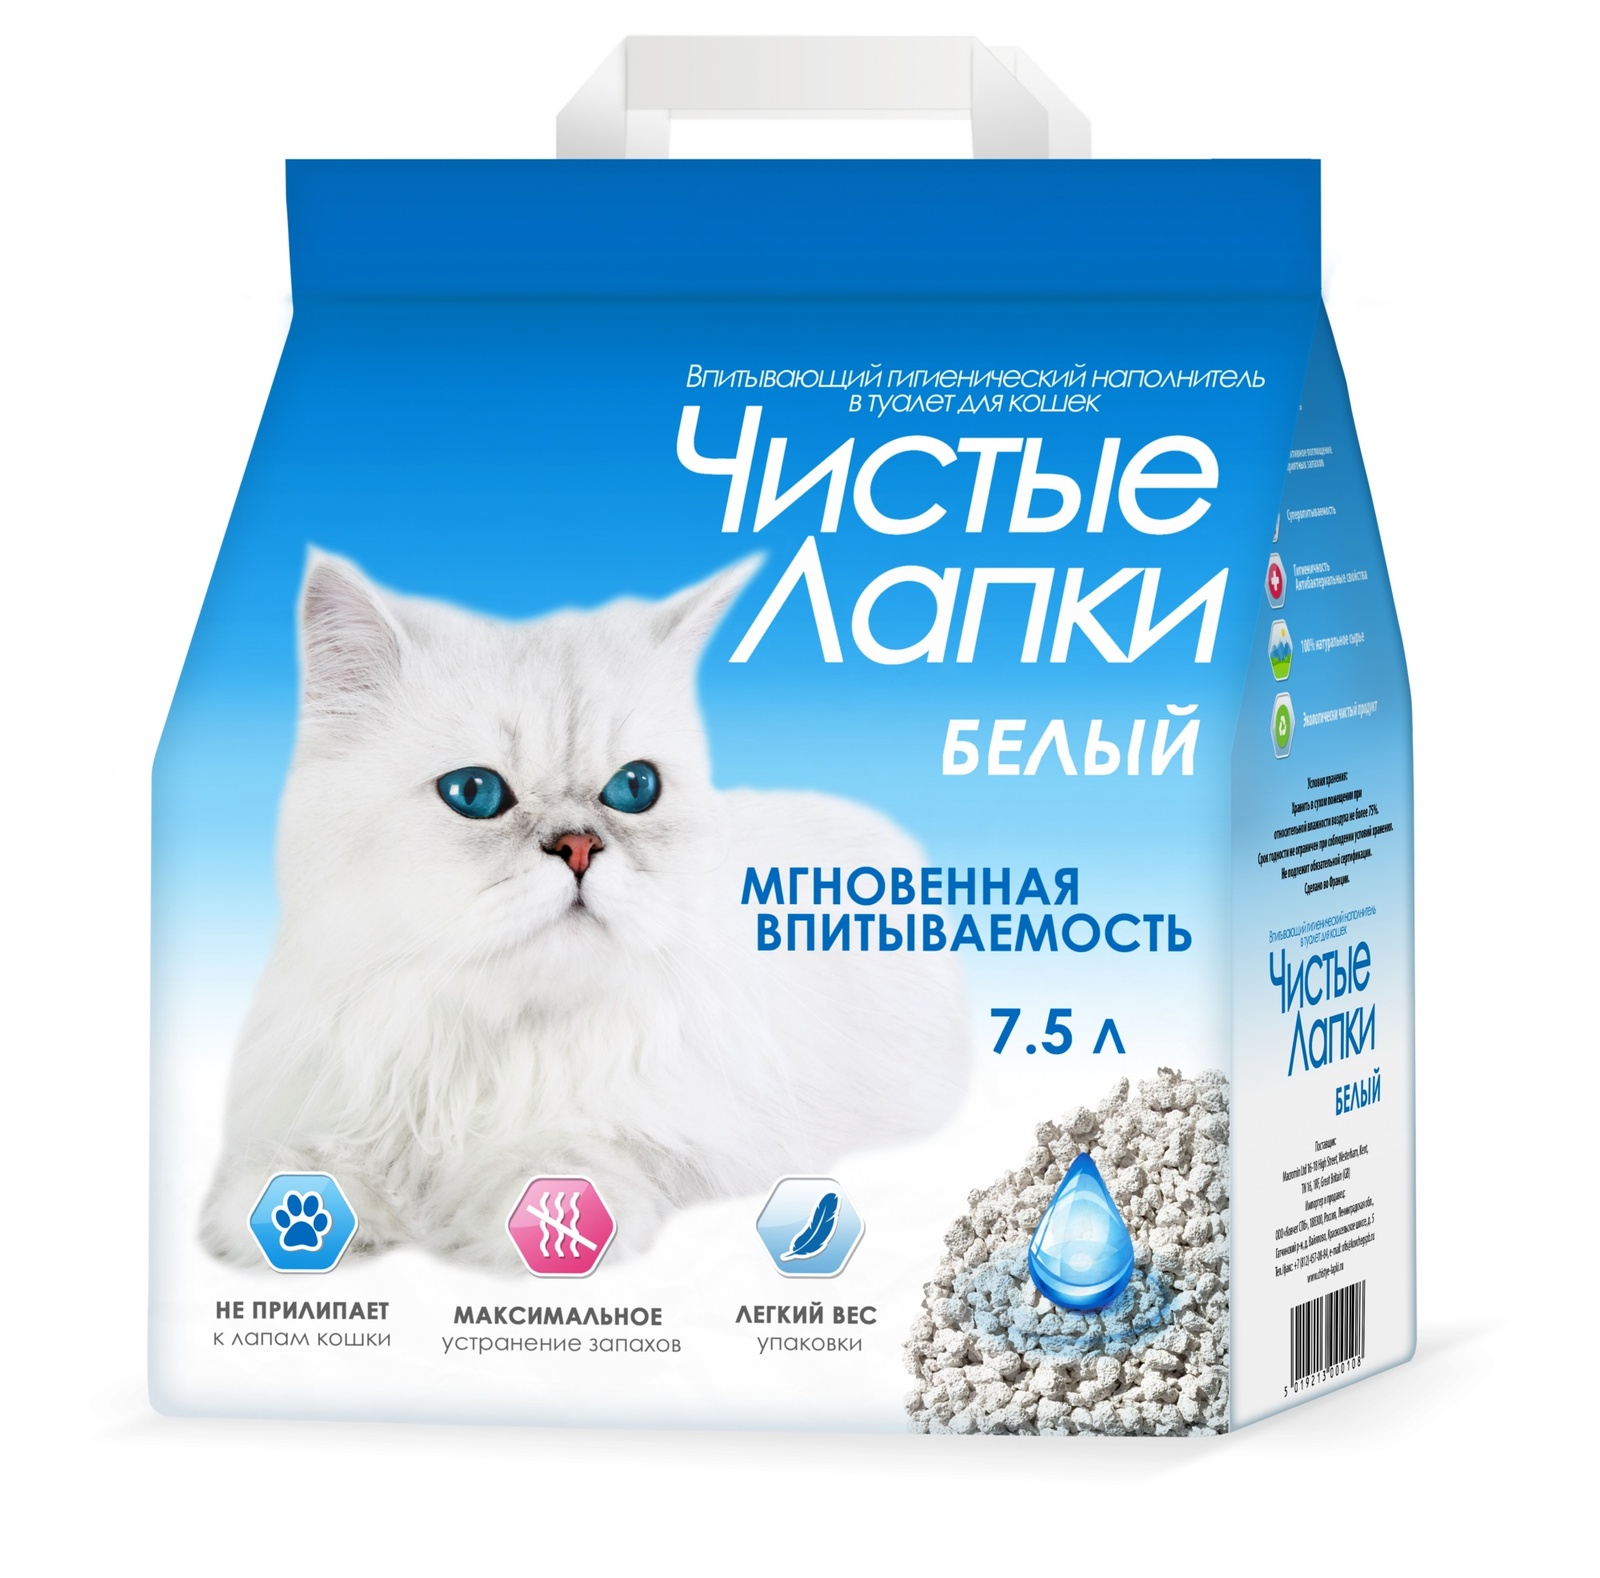 Купить наполнитель для кошачьего туалета в москве